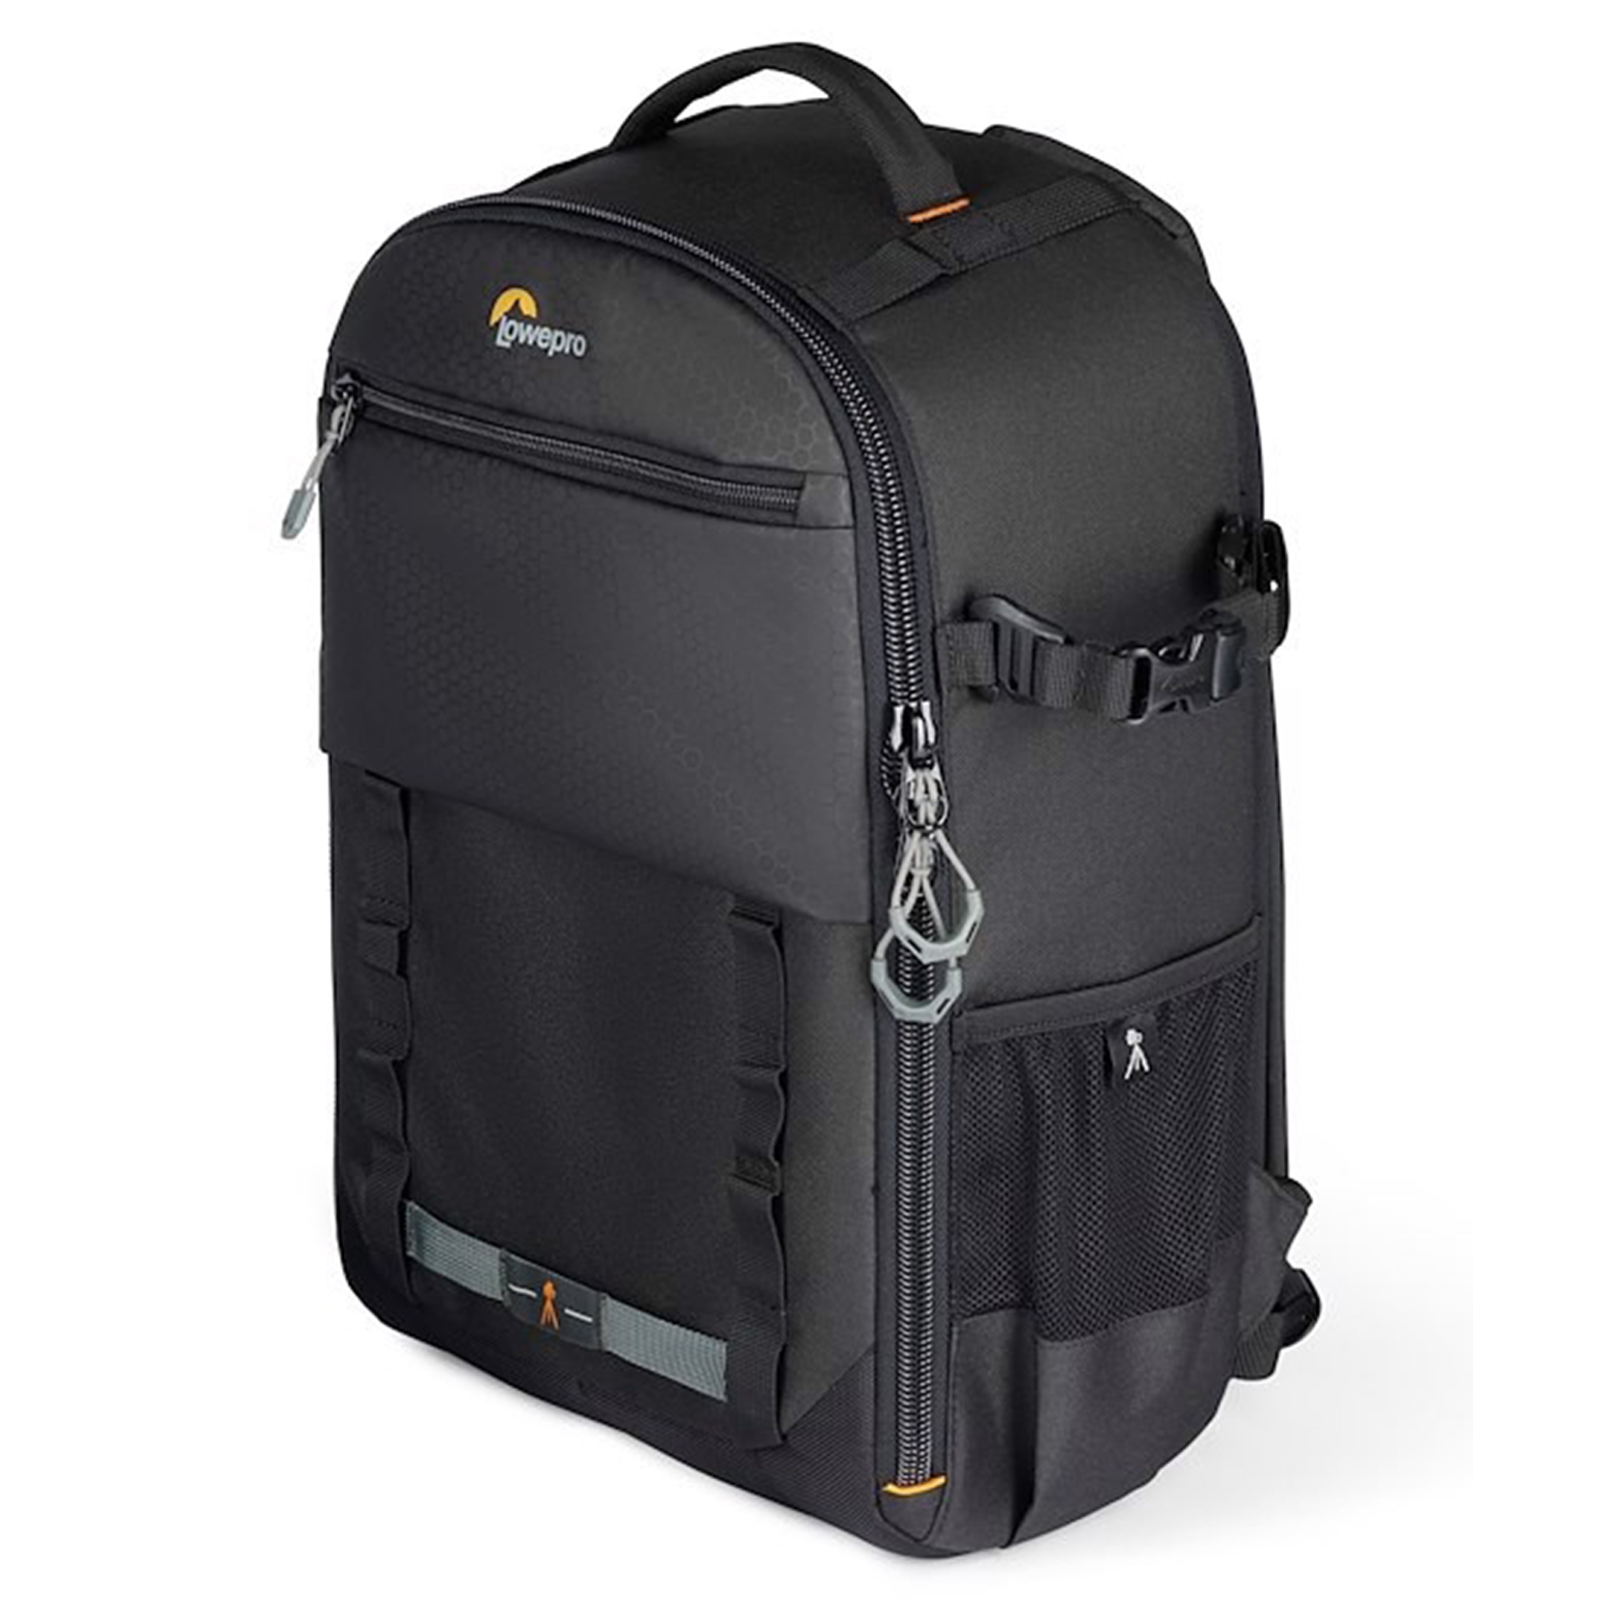 Image of Lowepro Adventura BP 300 III Backpack - Black